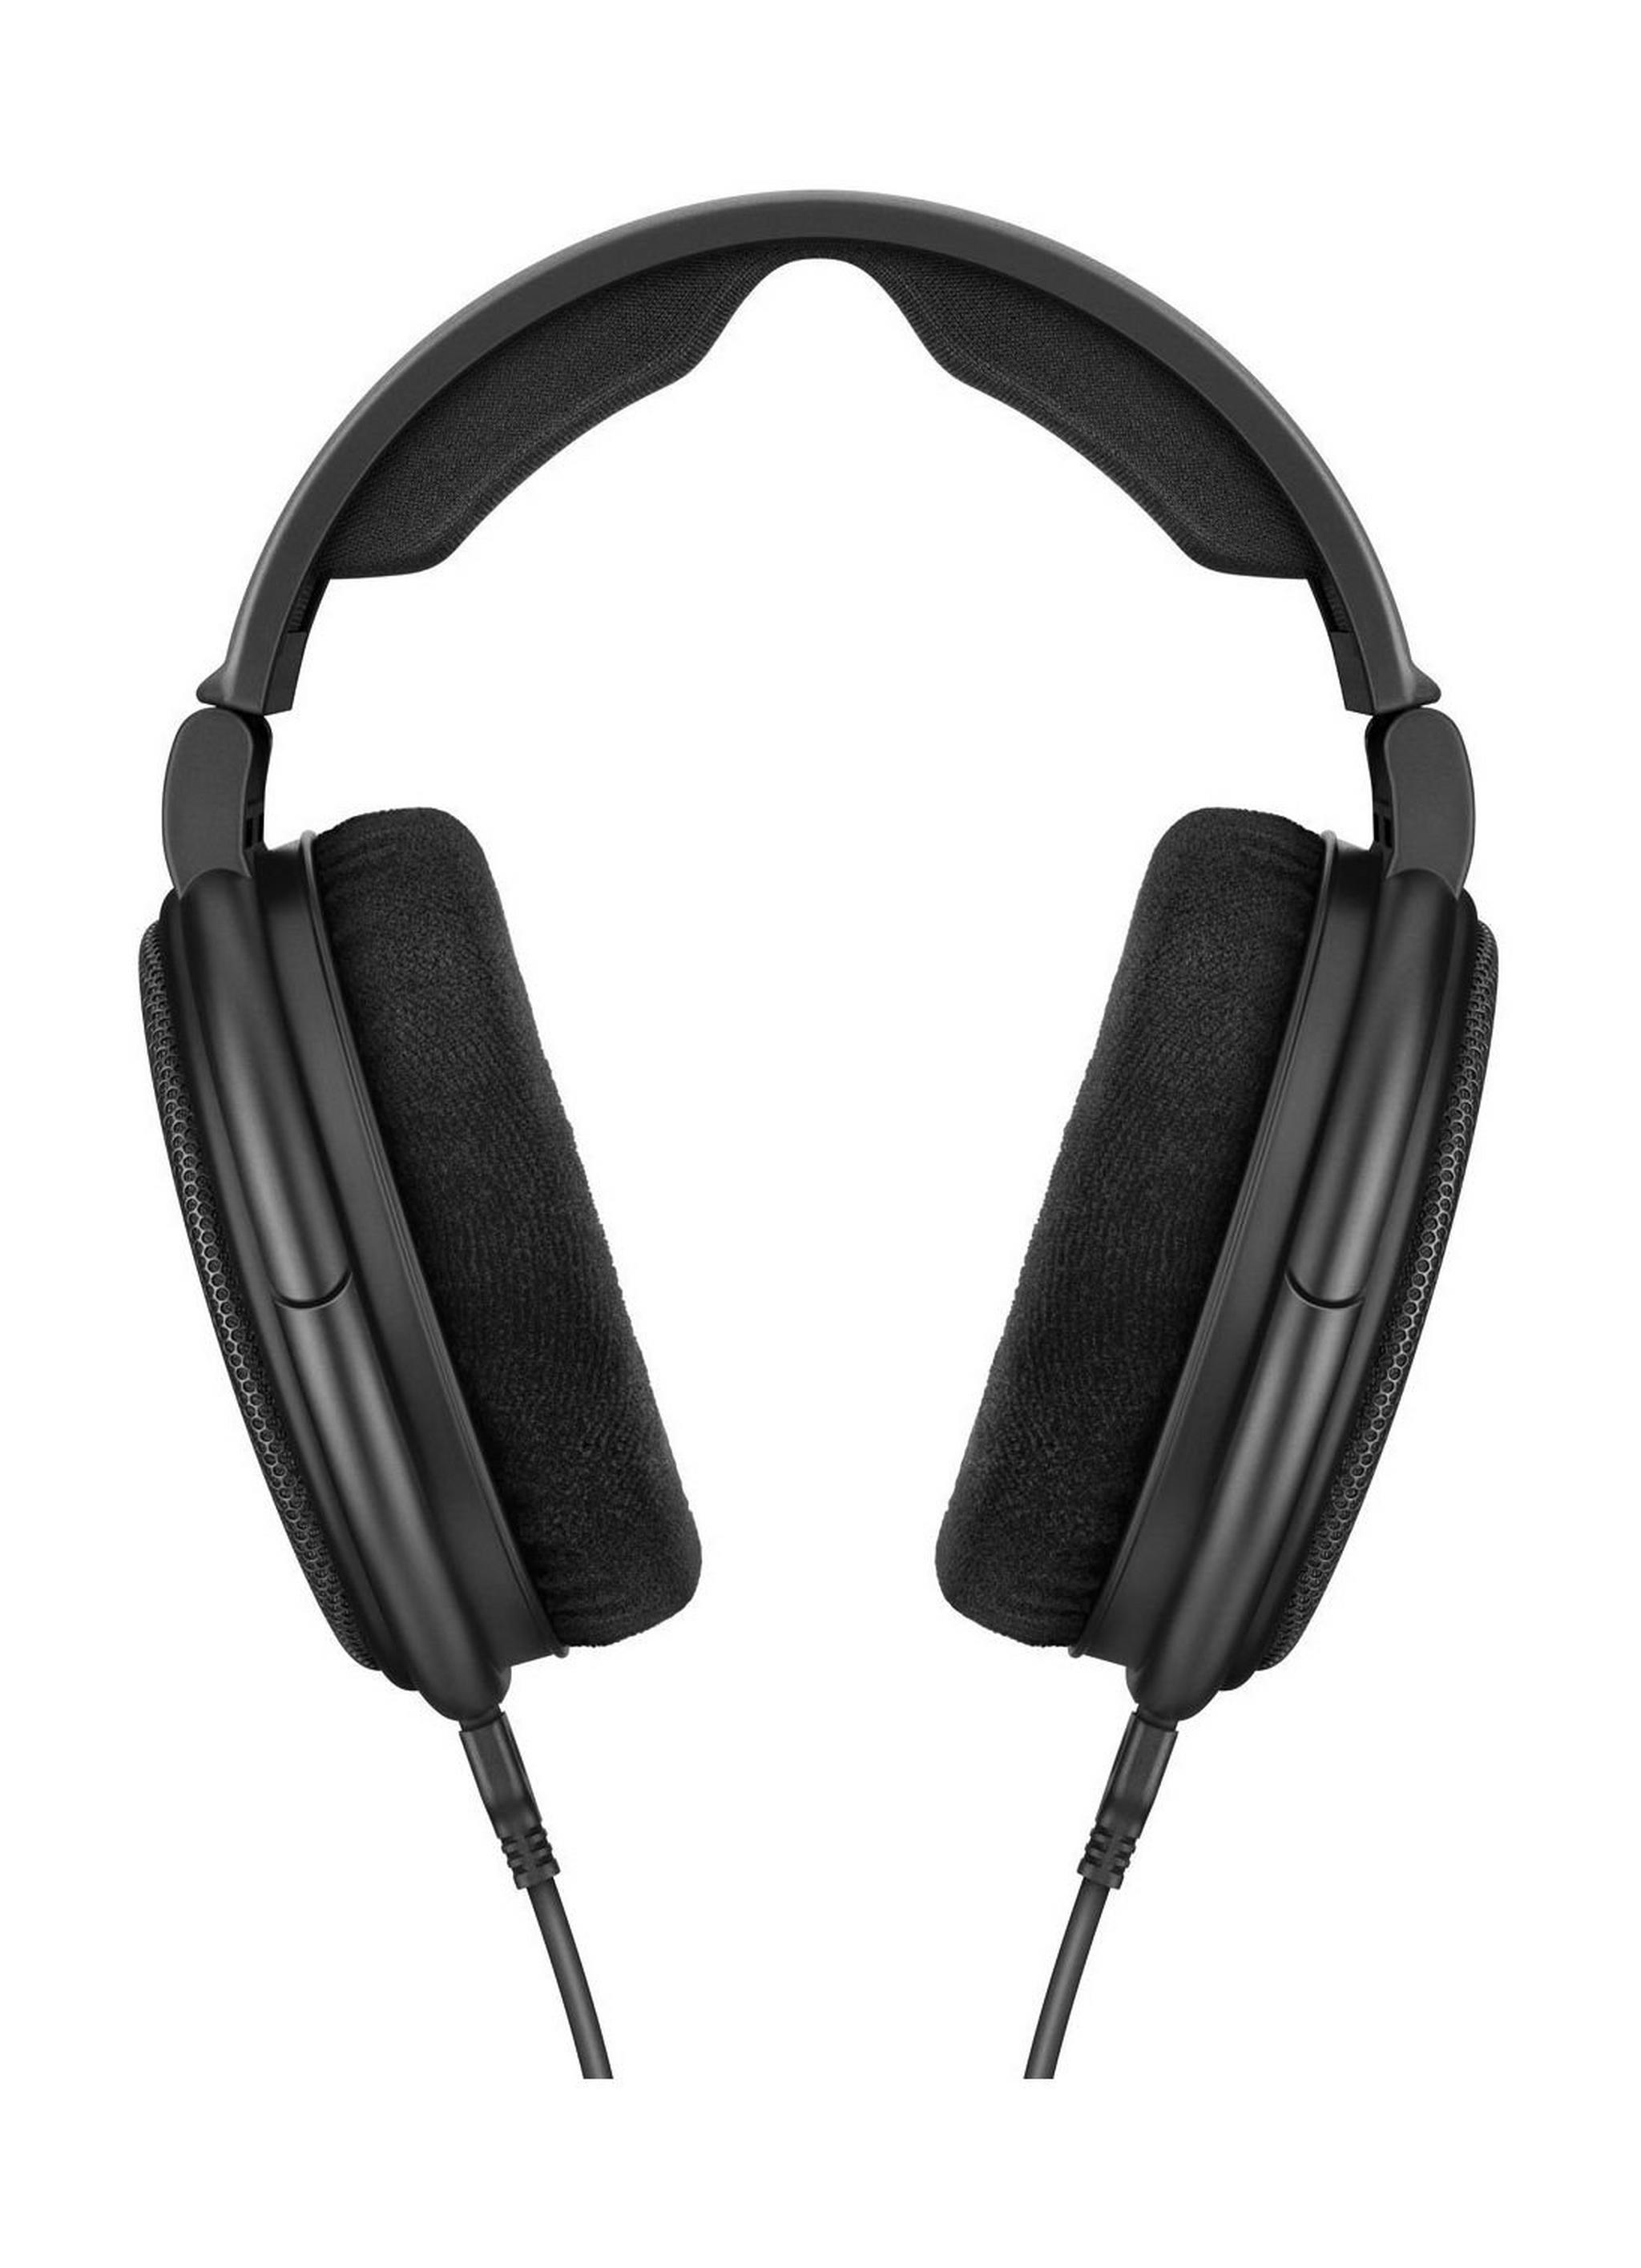 سماعة الرأس اوديوفيل عالية الدقة من سينهايزر - أسود (HD 660 S)